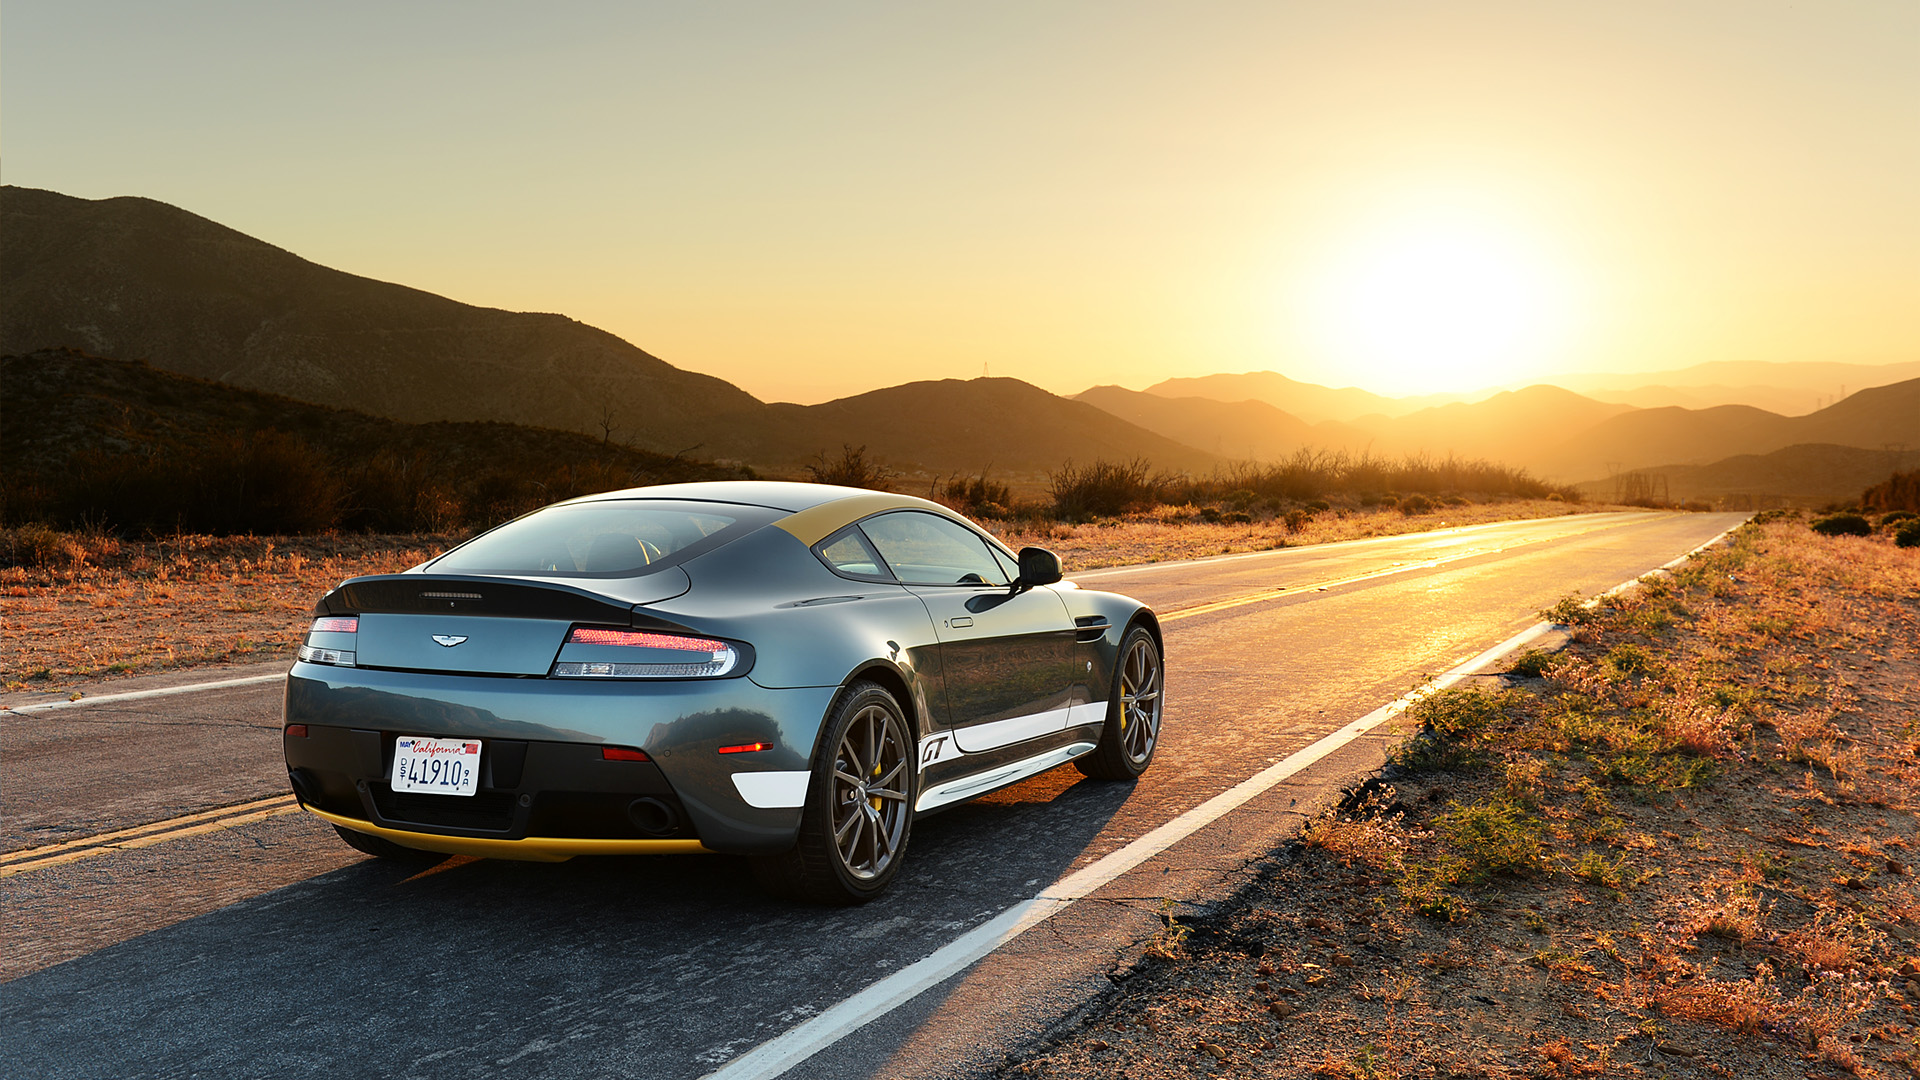  2015 Aston Martin V8 Vantage GT Wallpaper.